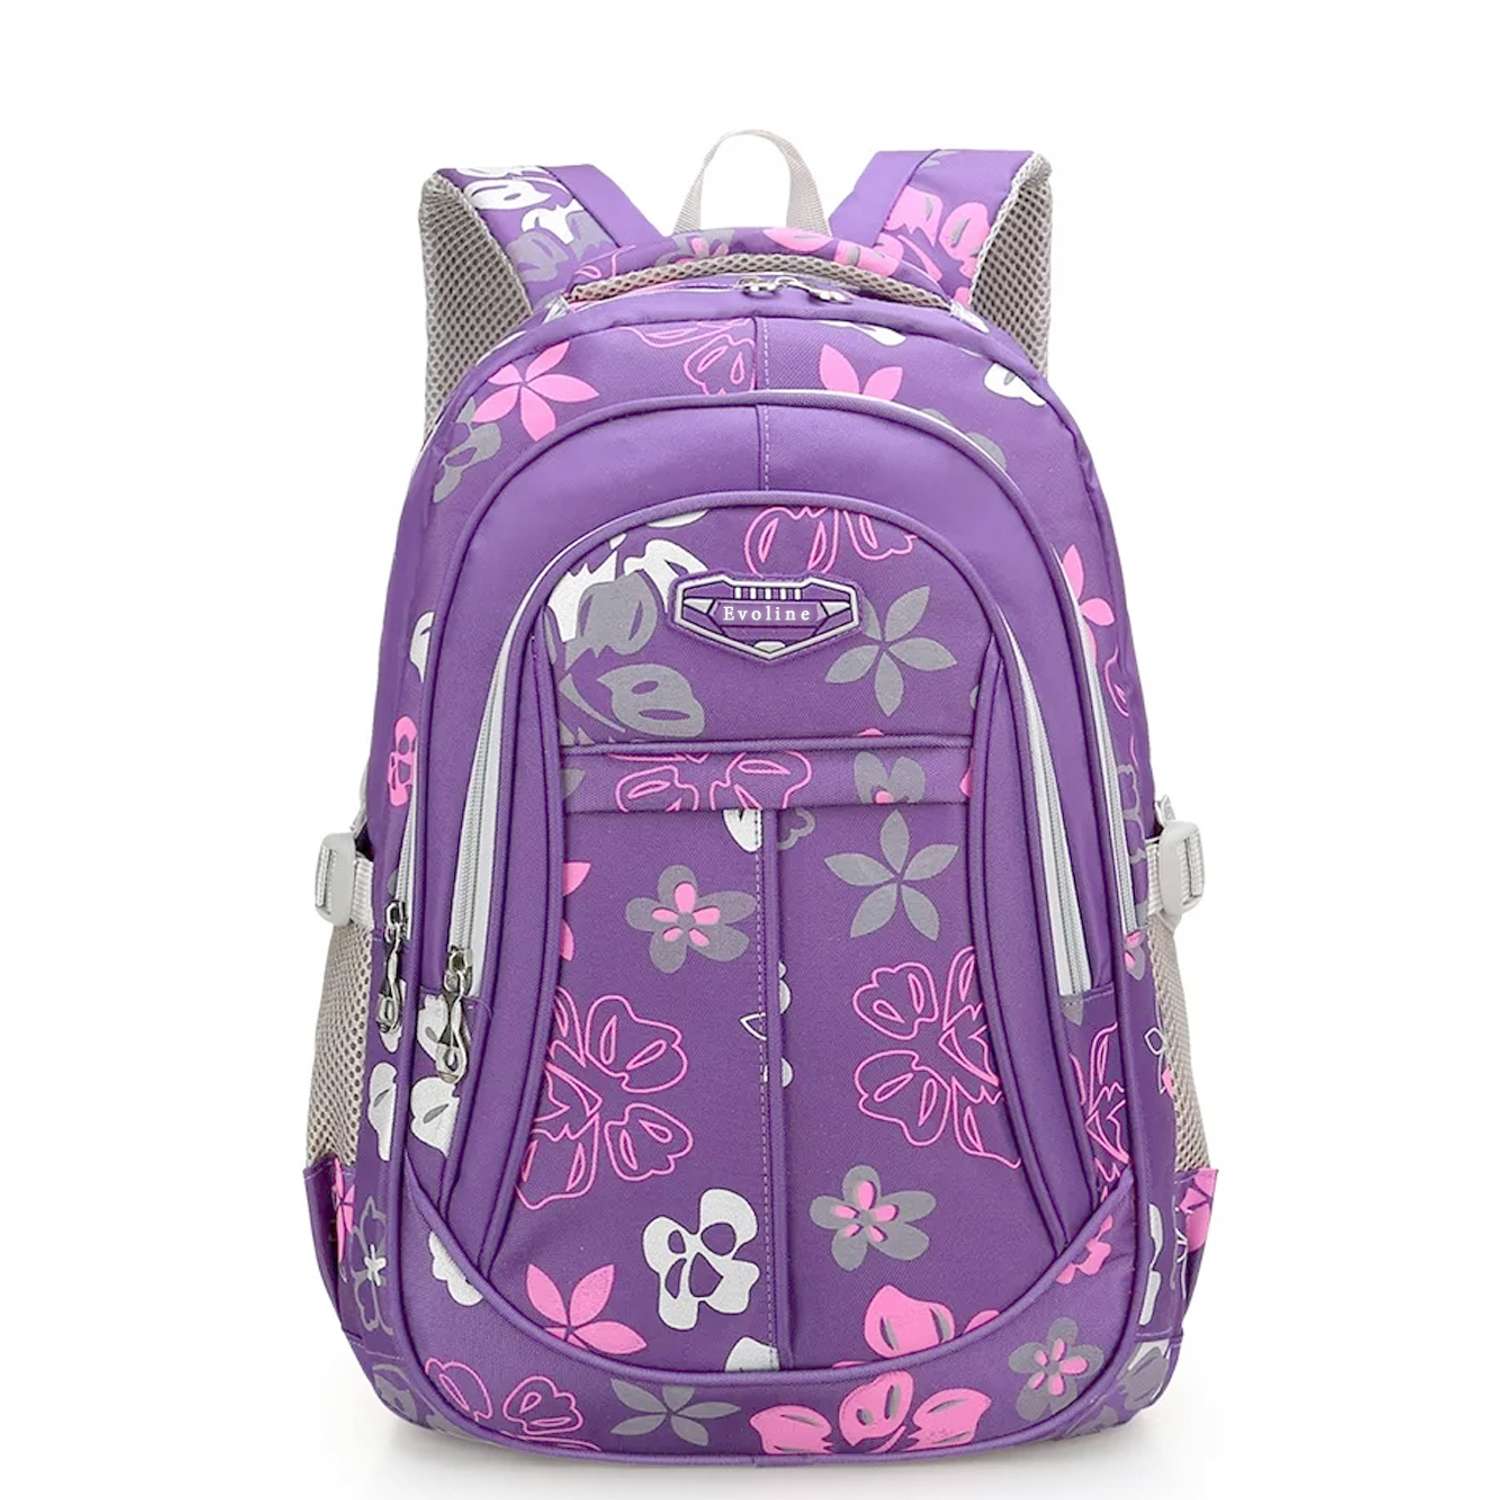 Рюкзак школьный Evoline Средний фиолетовый серый EVO-160 - фото 1